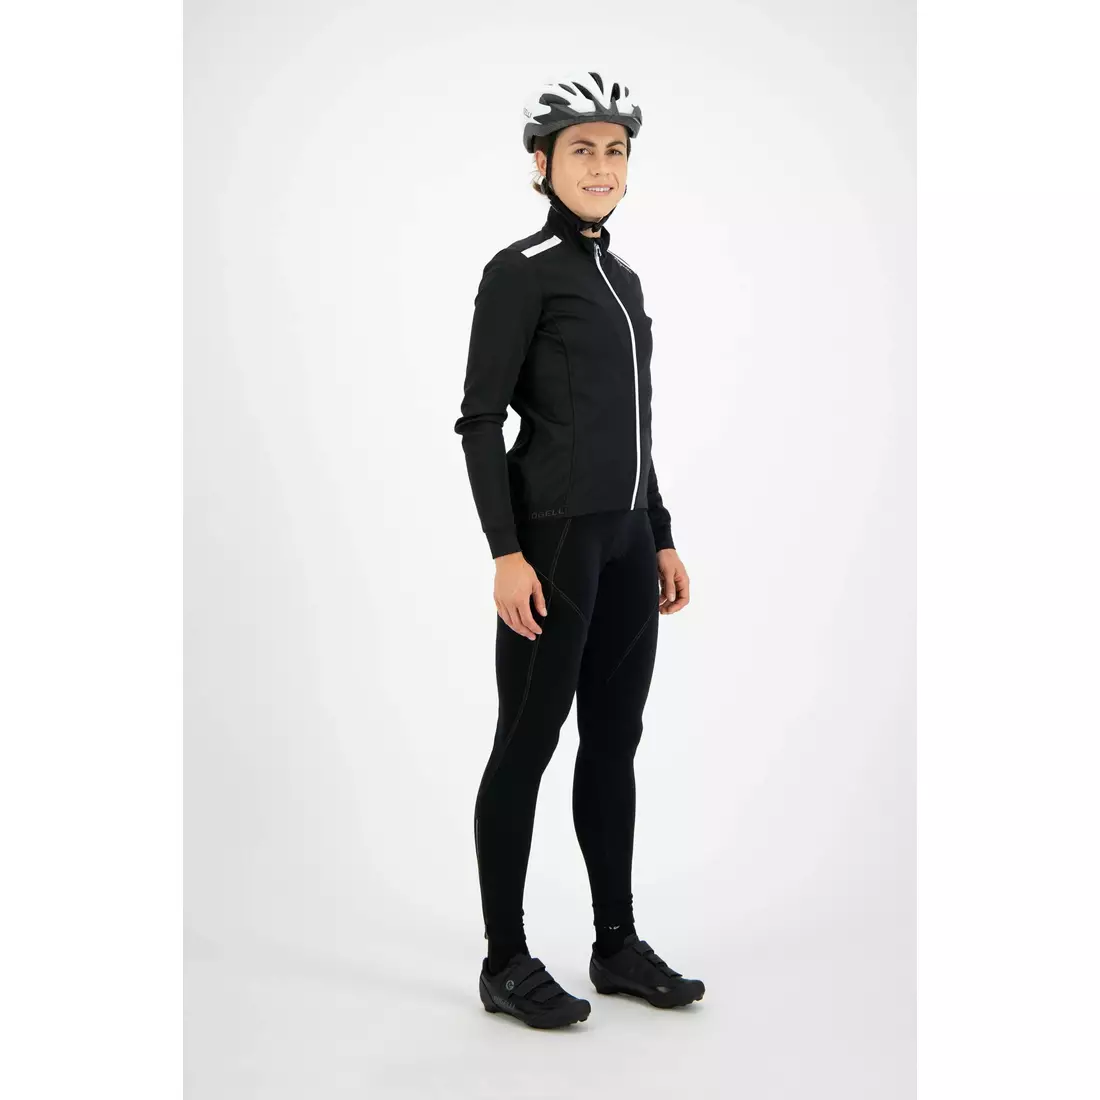 ROGELLI PESARA jachetă de ciclism de iarnă pentru femei, negru și alb